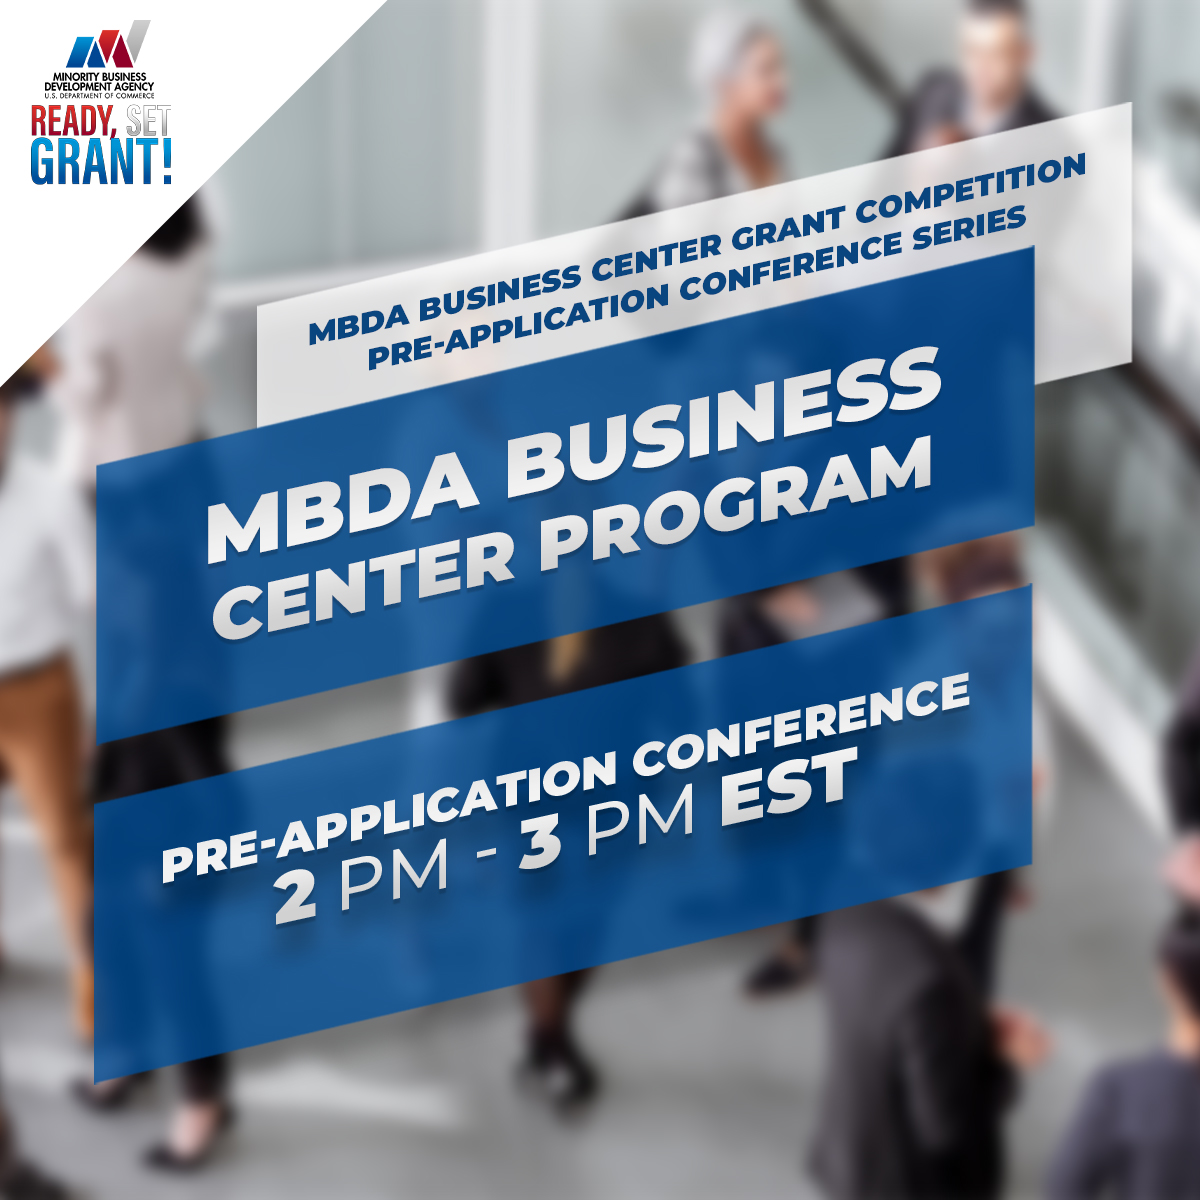 MBDA Business Center Program